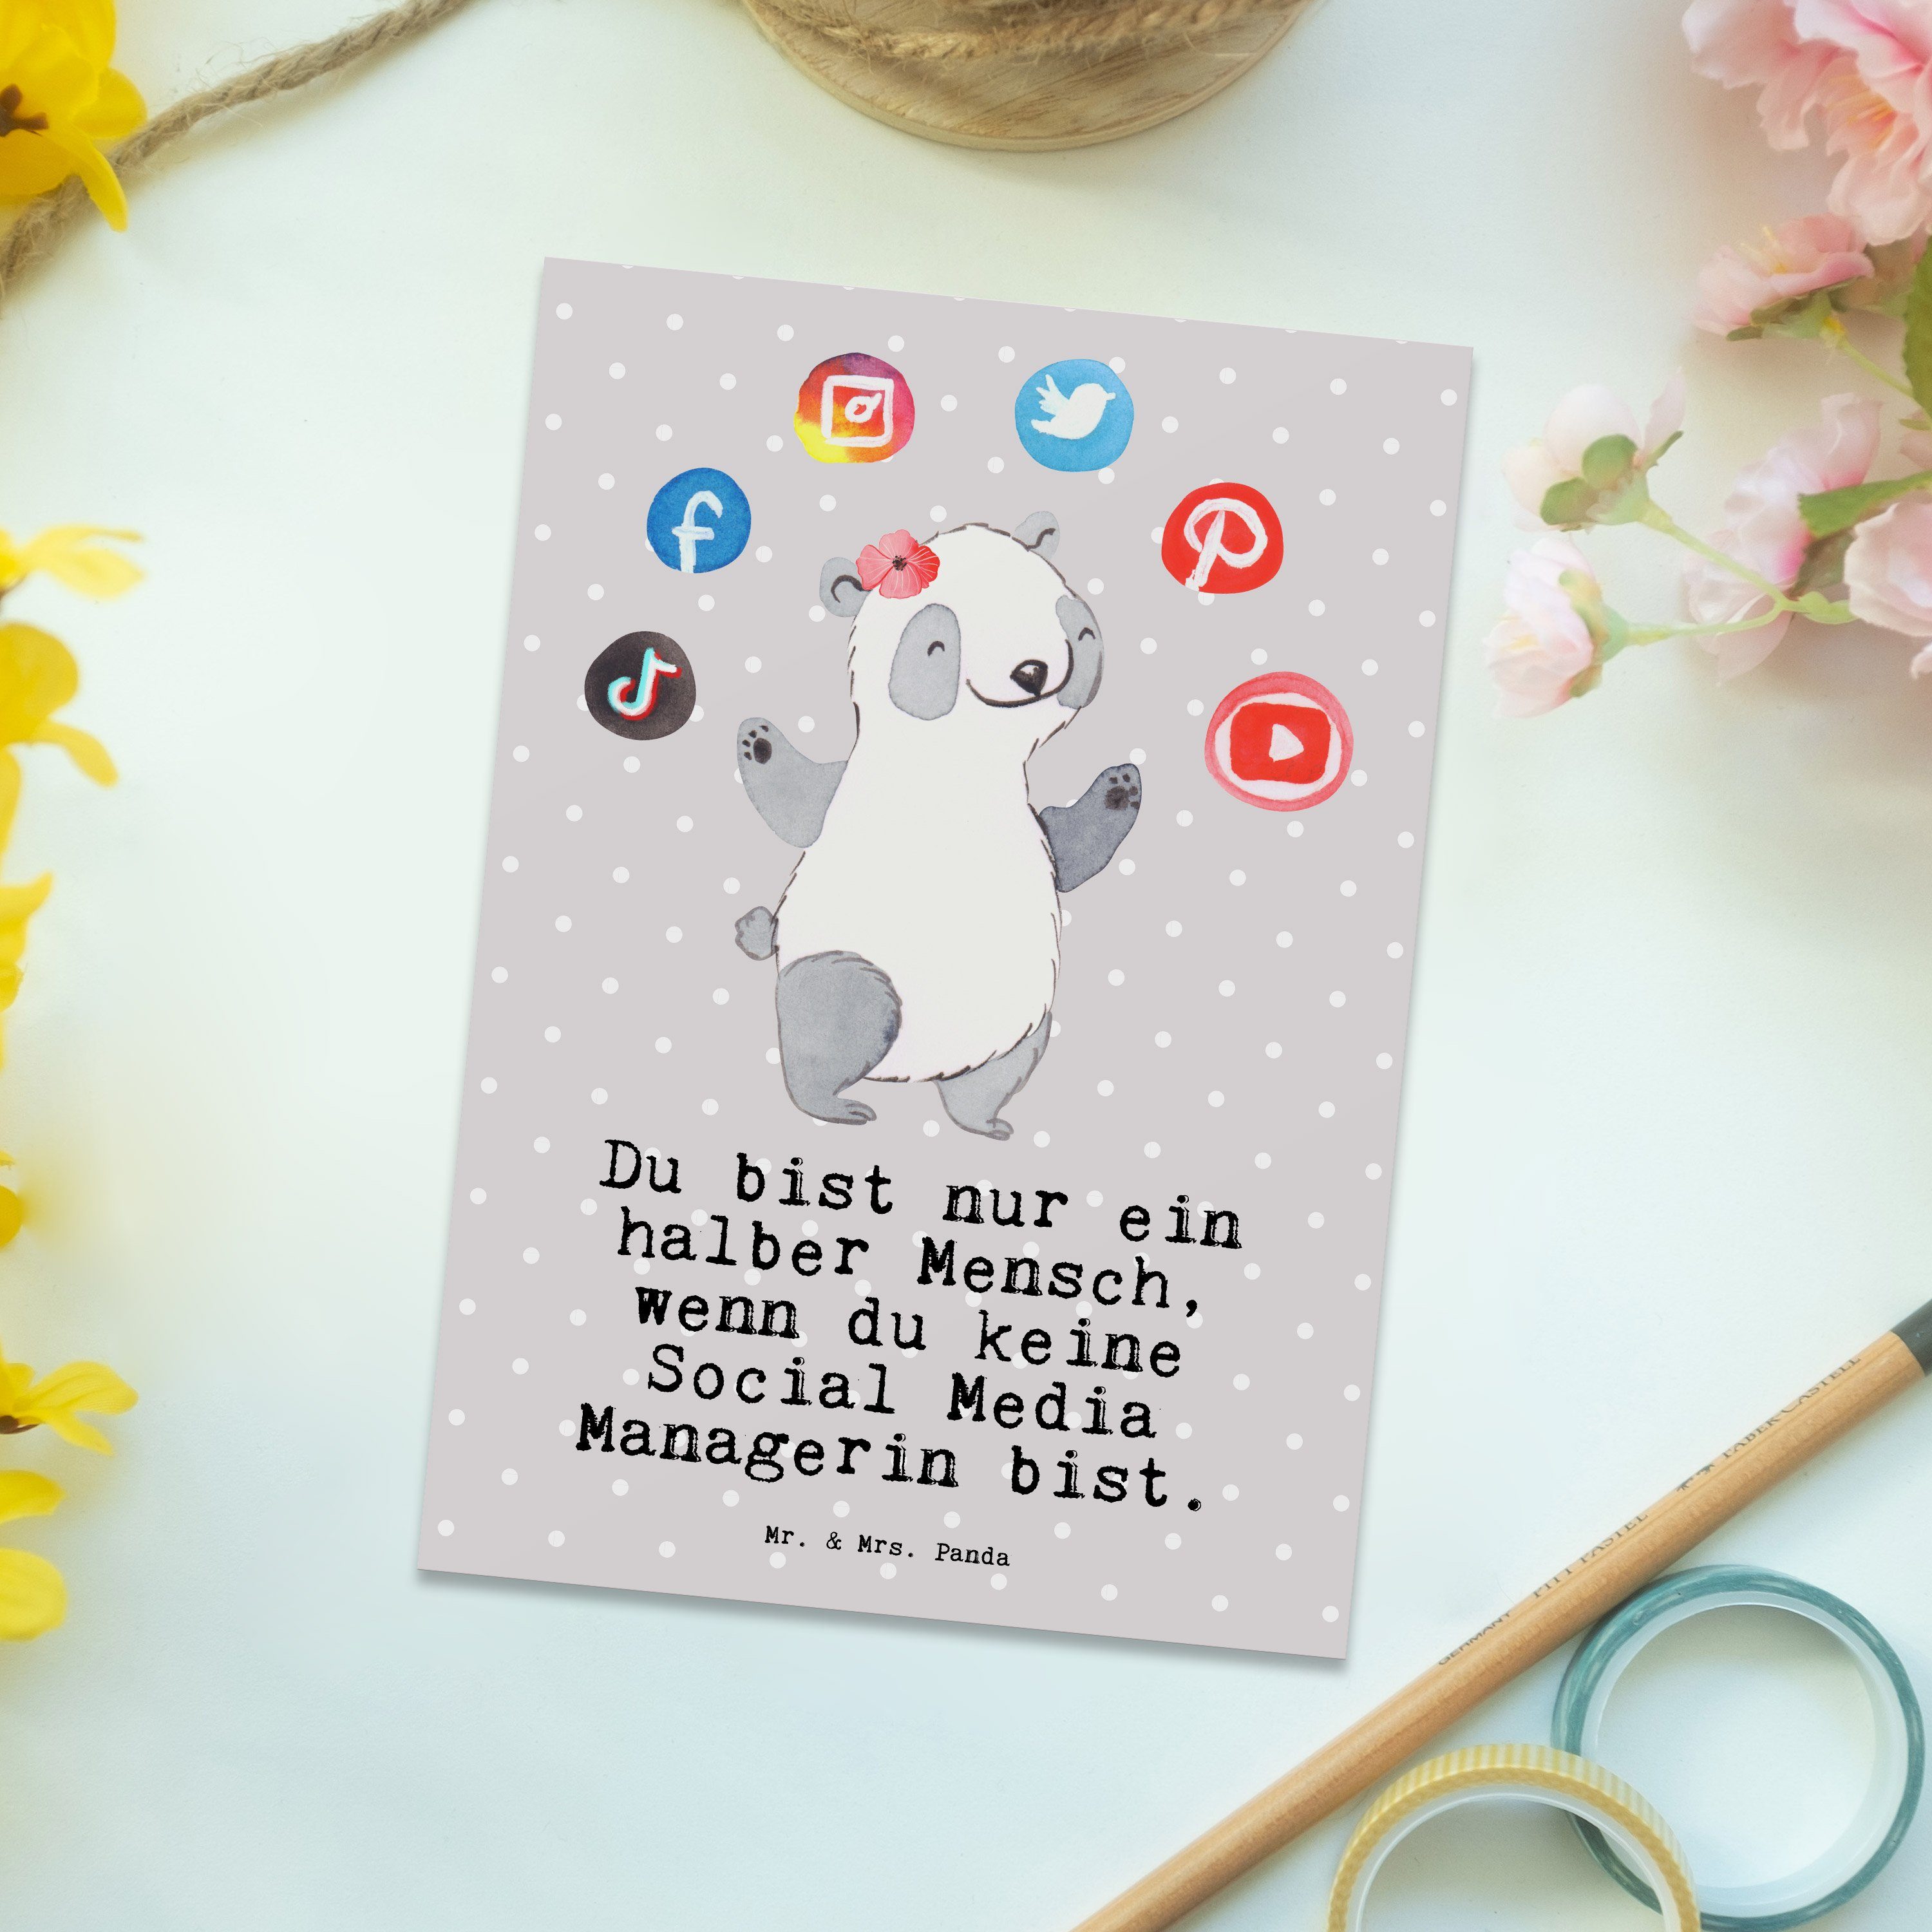 Mrs. Postkarte mit Geburtstag Pastell Mr. Geschenk, - Social & Managerin Herz Panda - Grau Media